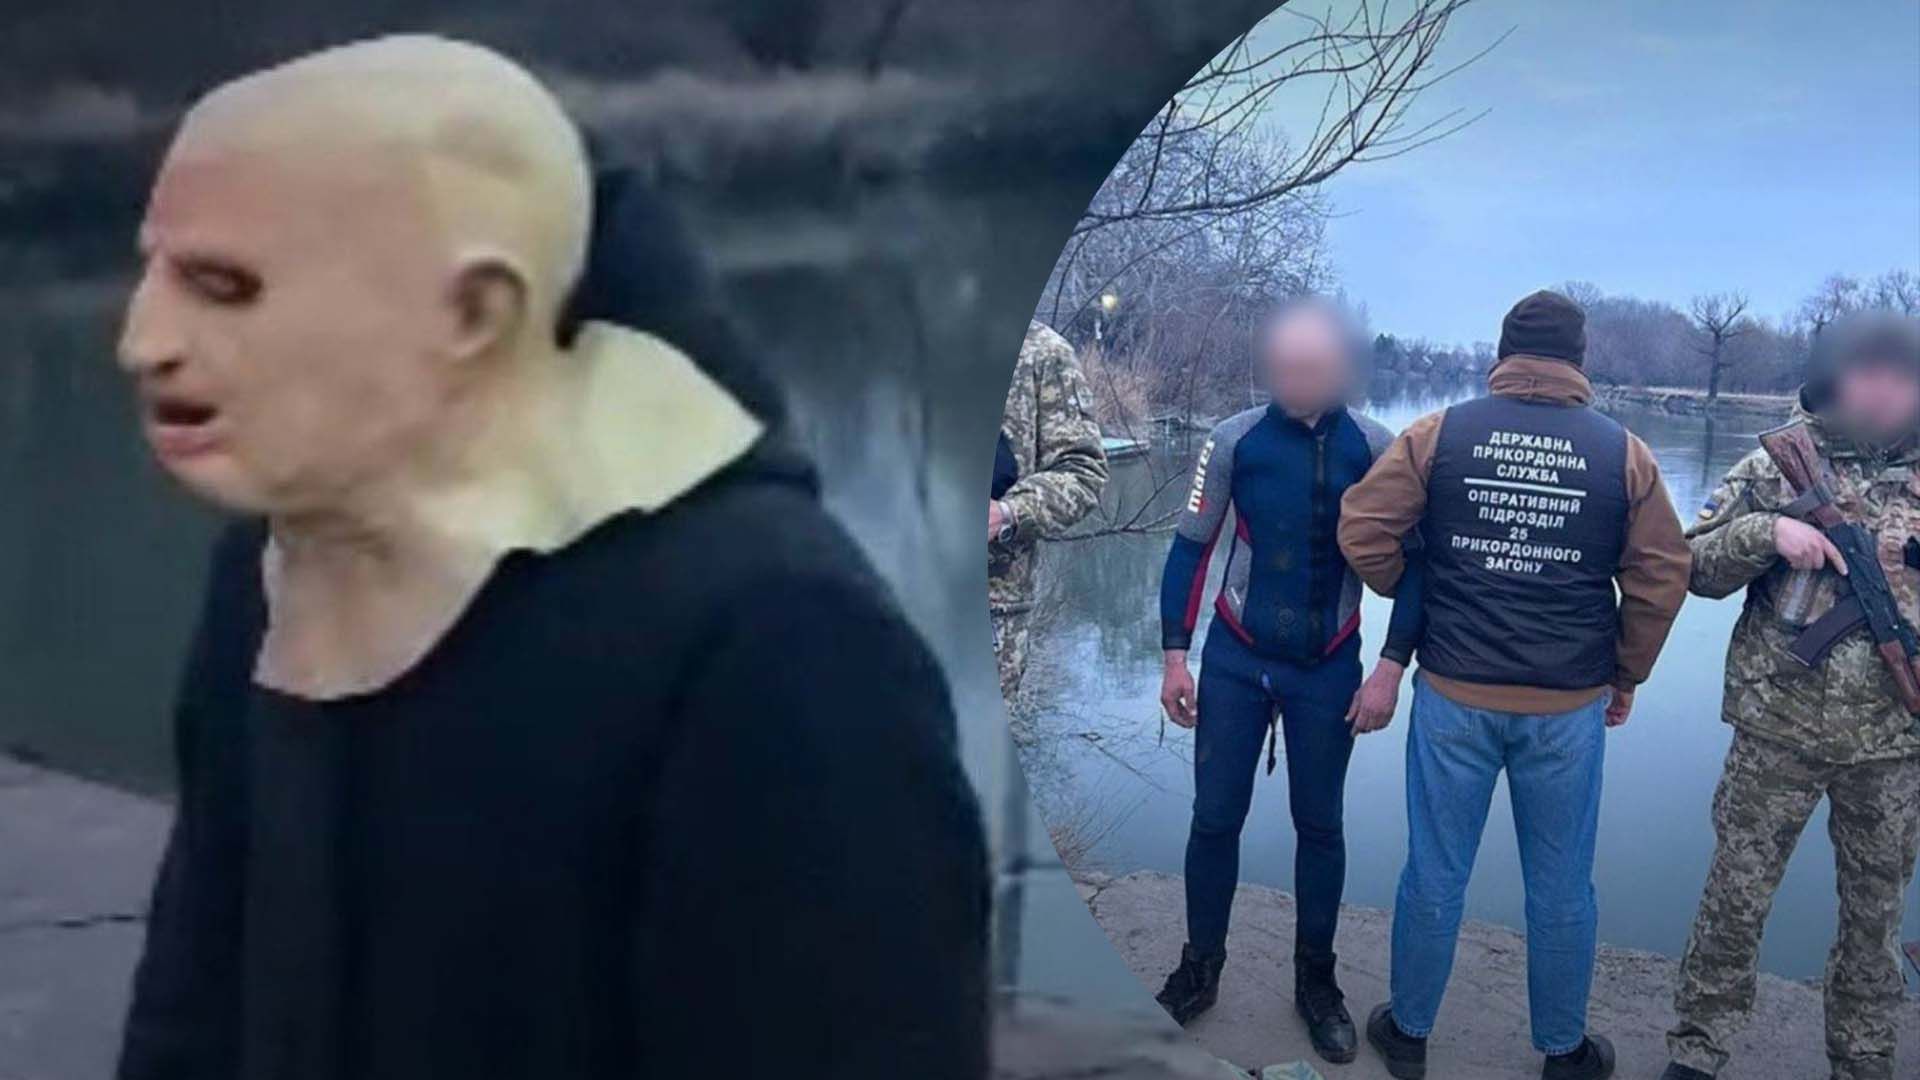 Пограничники задержали на границе с Молдовой уклониста в костюме Волдеморта